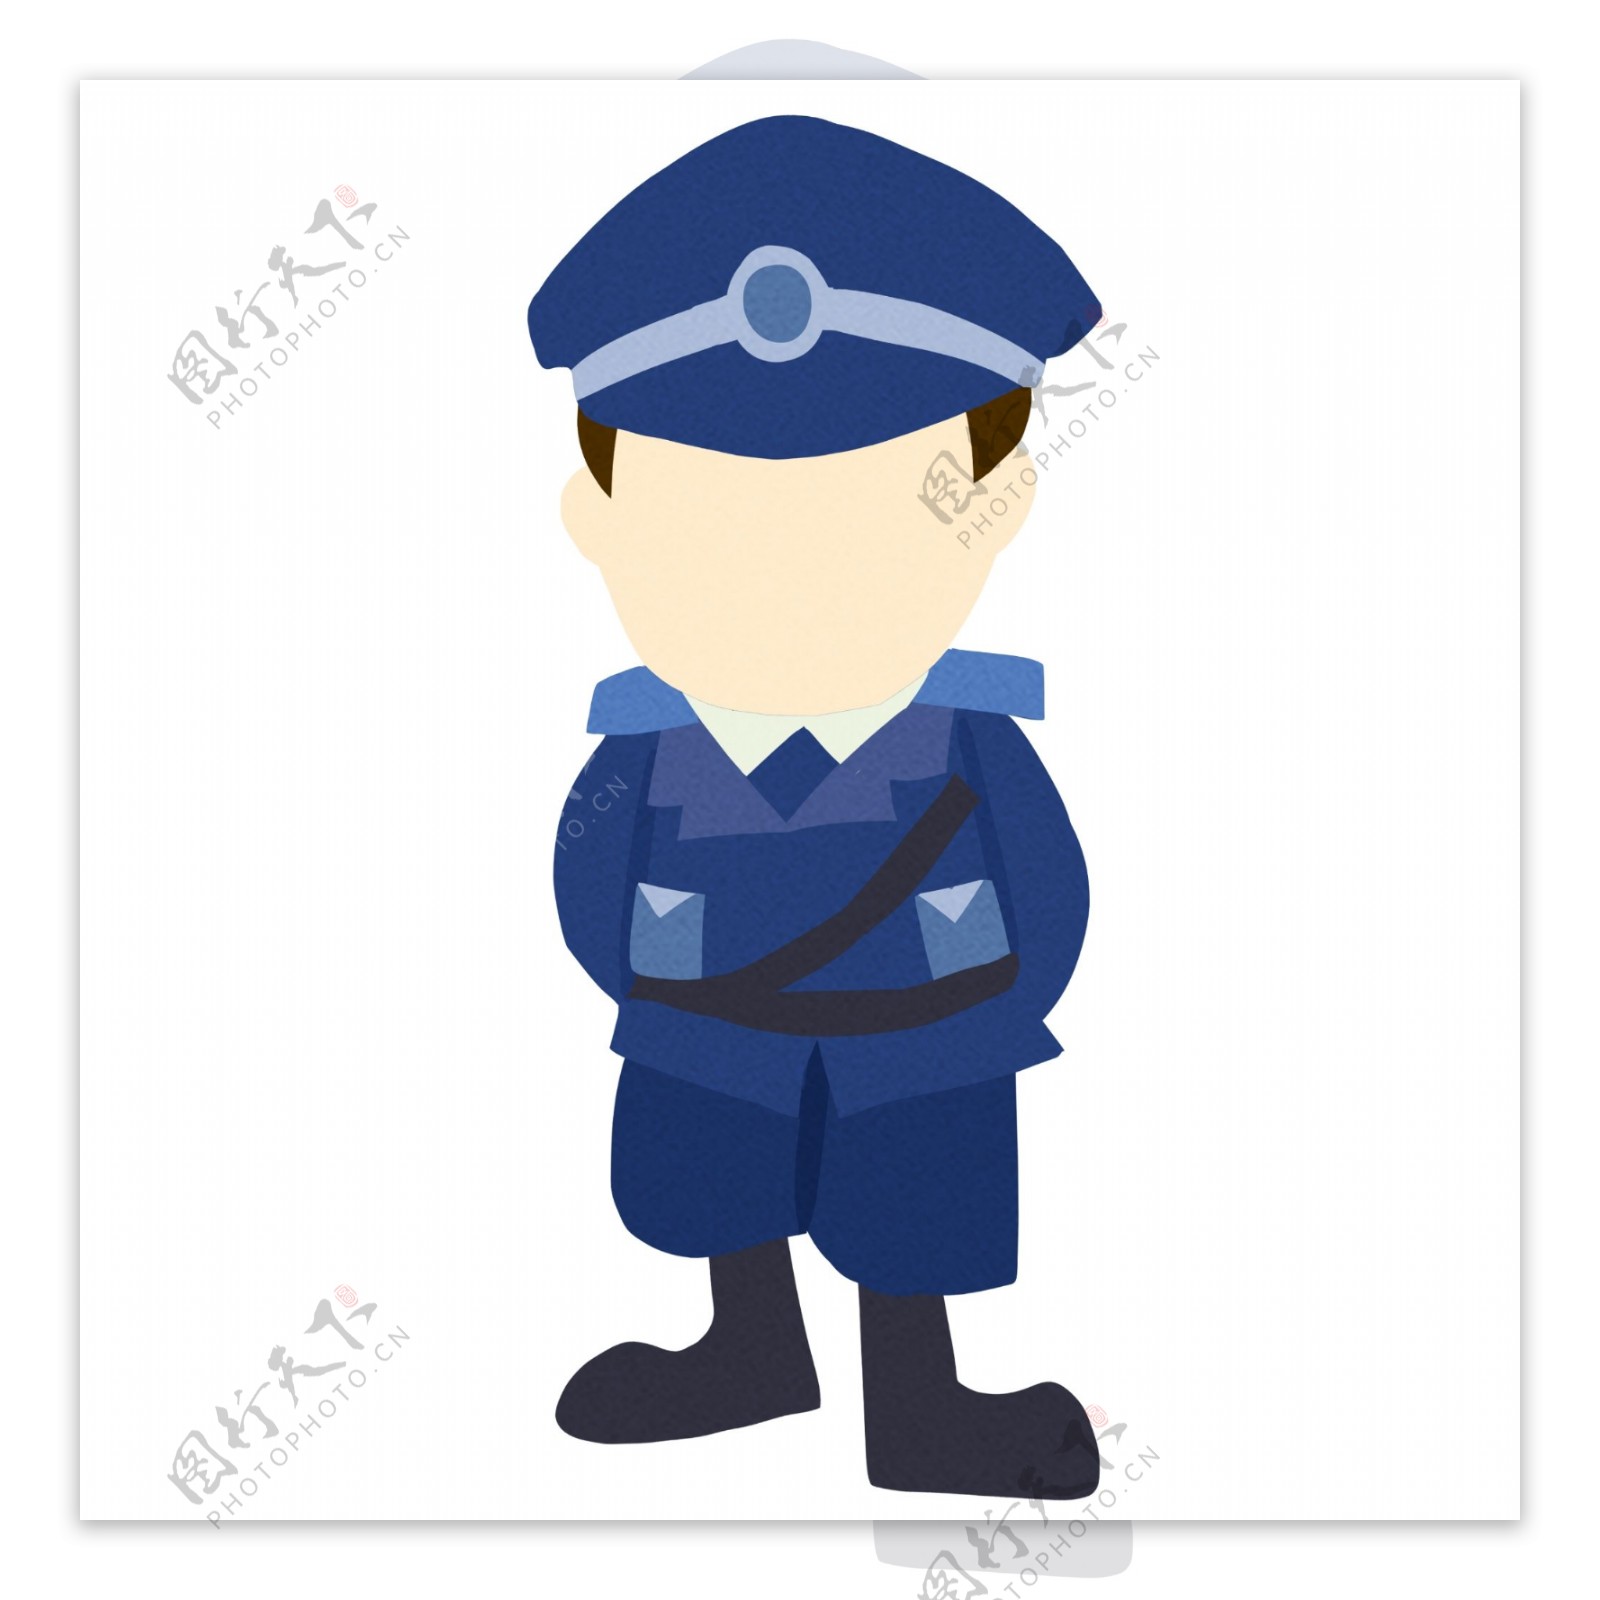 执勤的警察装饰插画